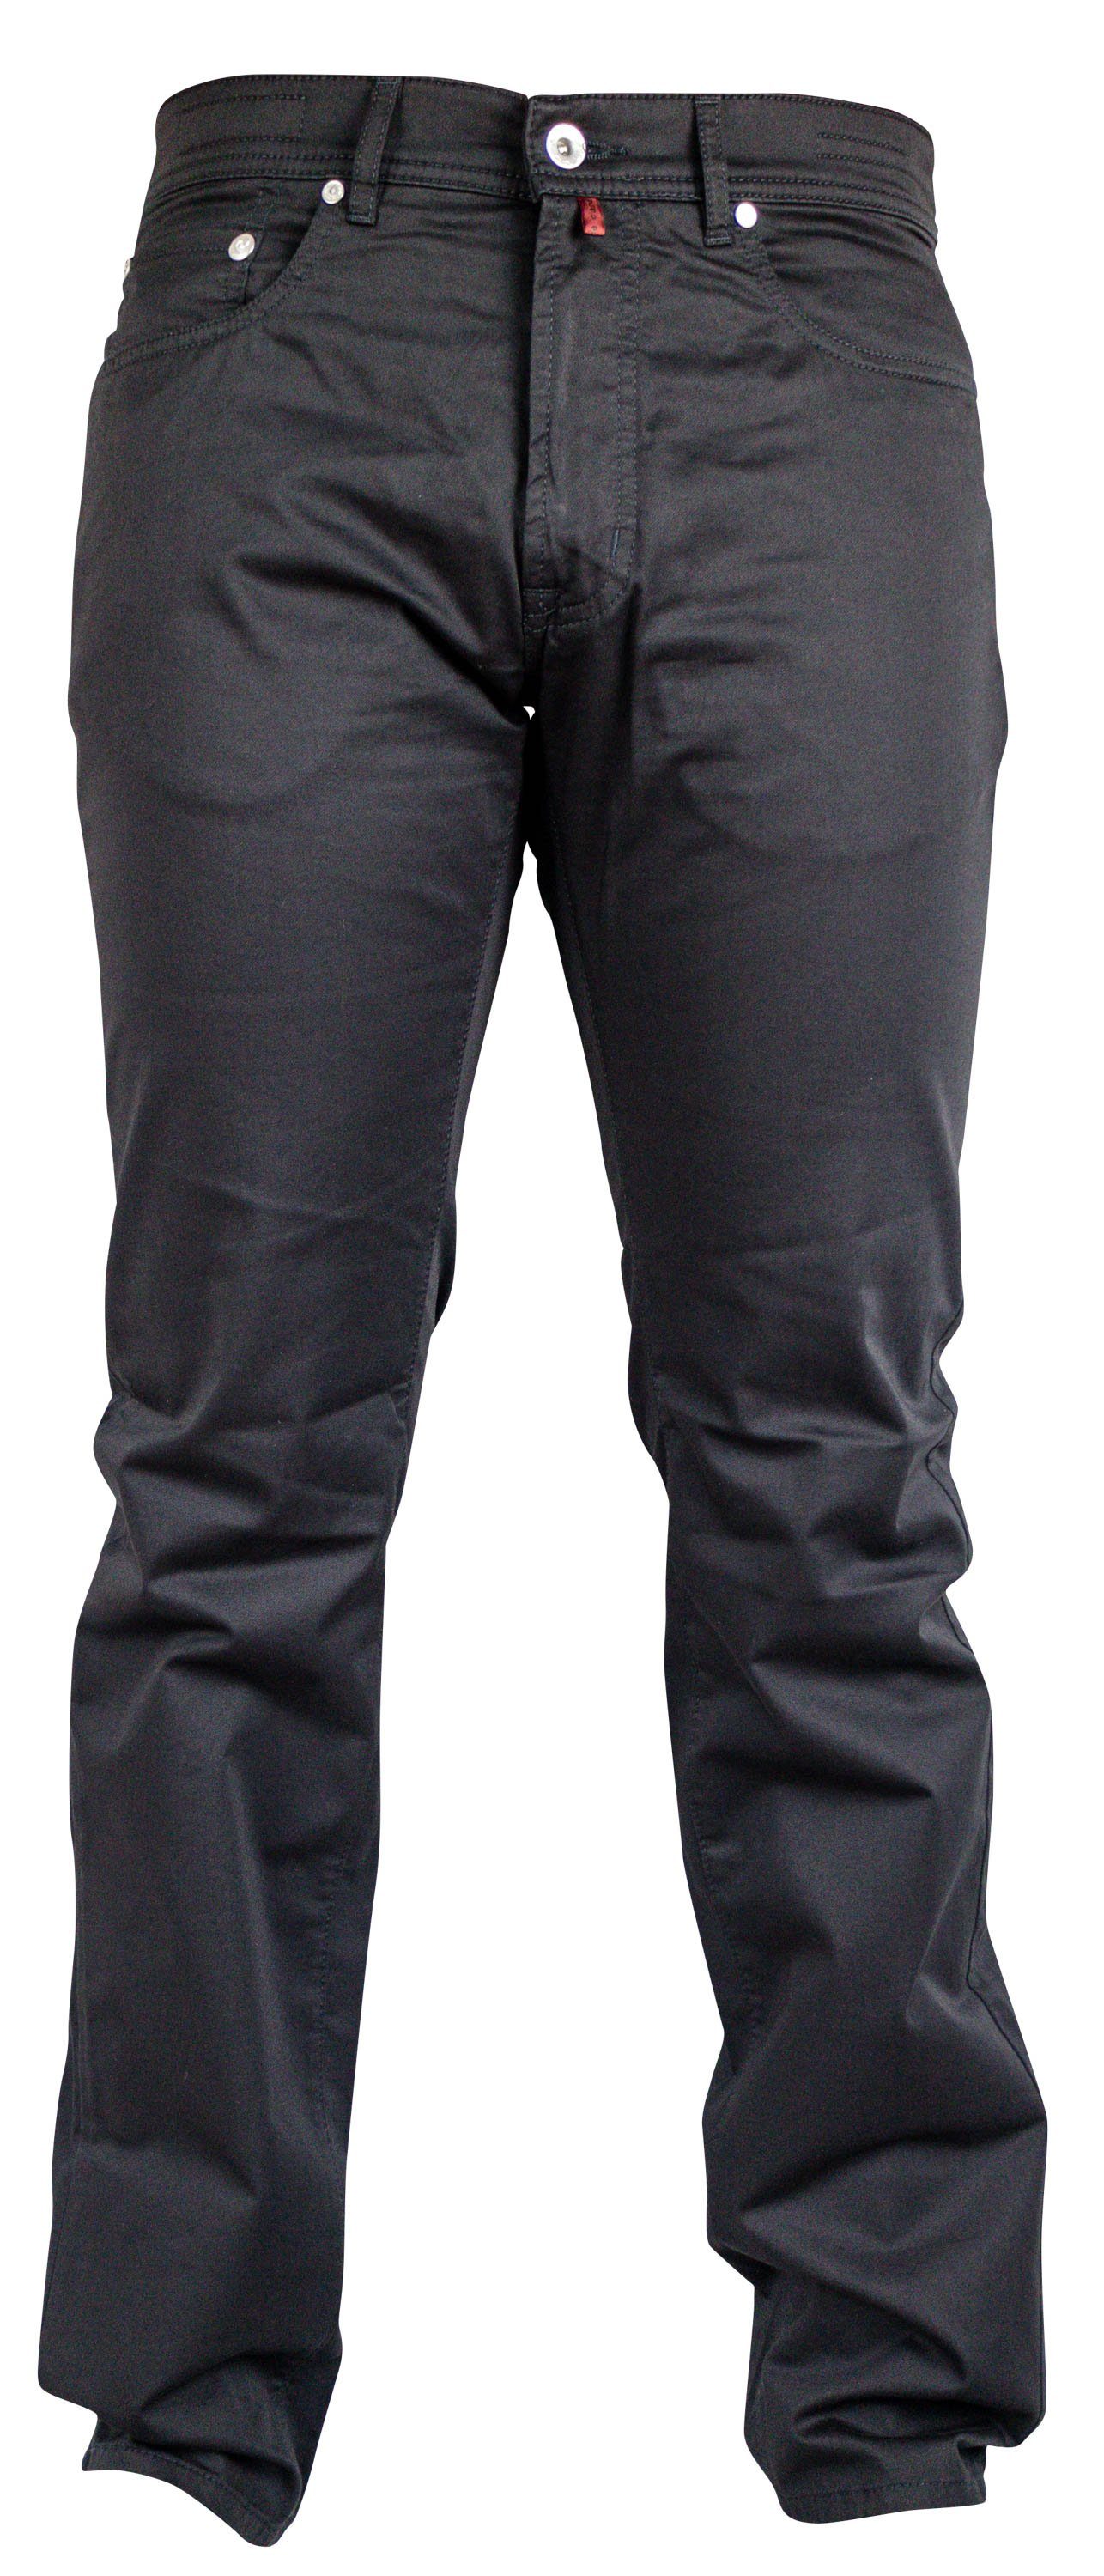 Pierre Cardin 5-Pocket-Jeans PIERRE CARDIN LYON Schwarz black clean 3091 2280.88